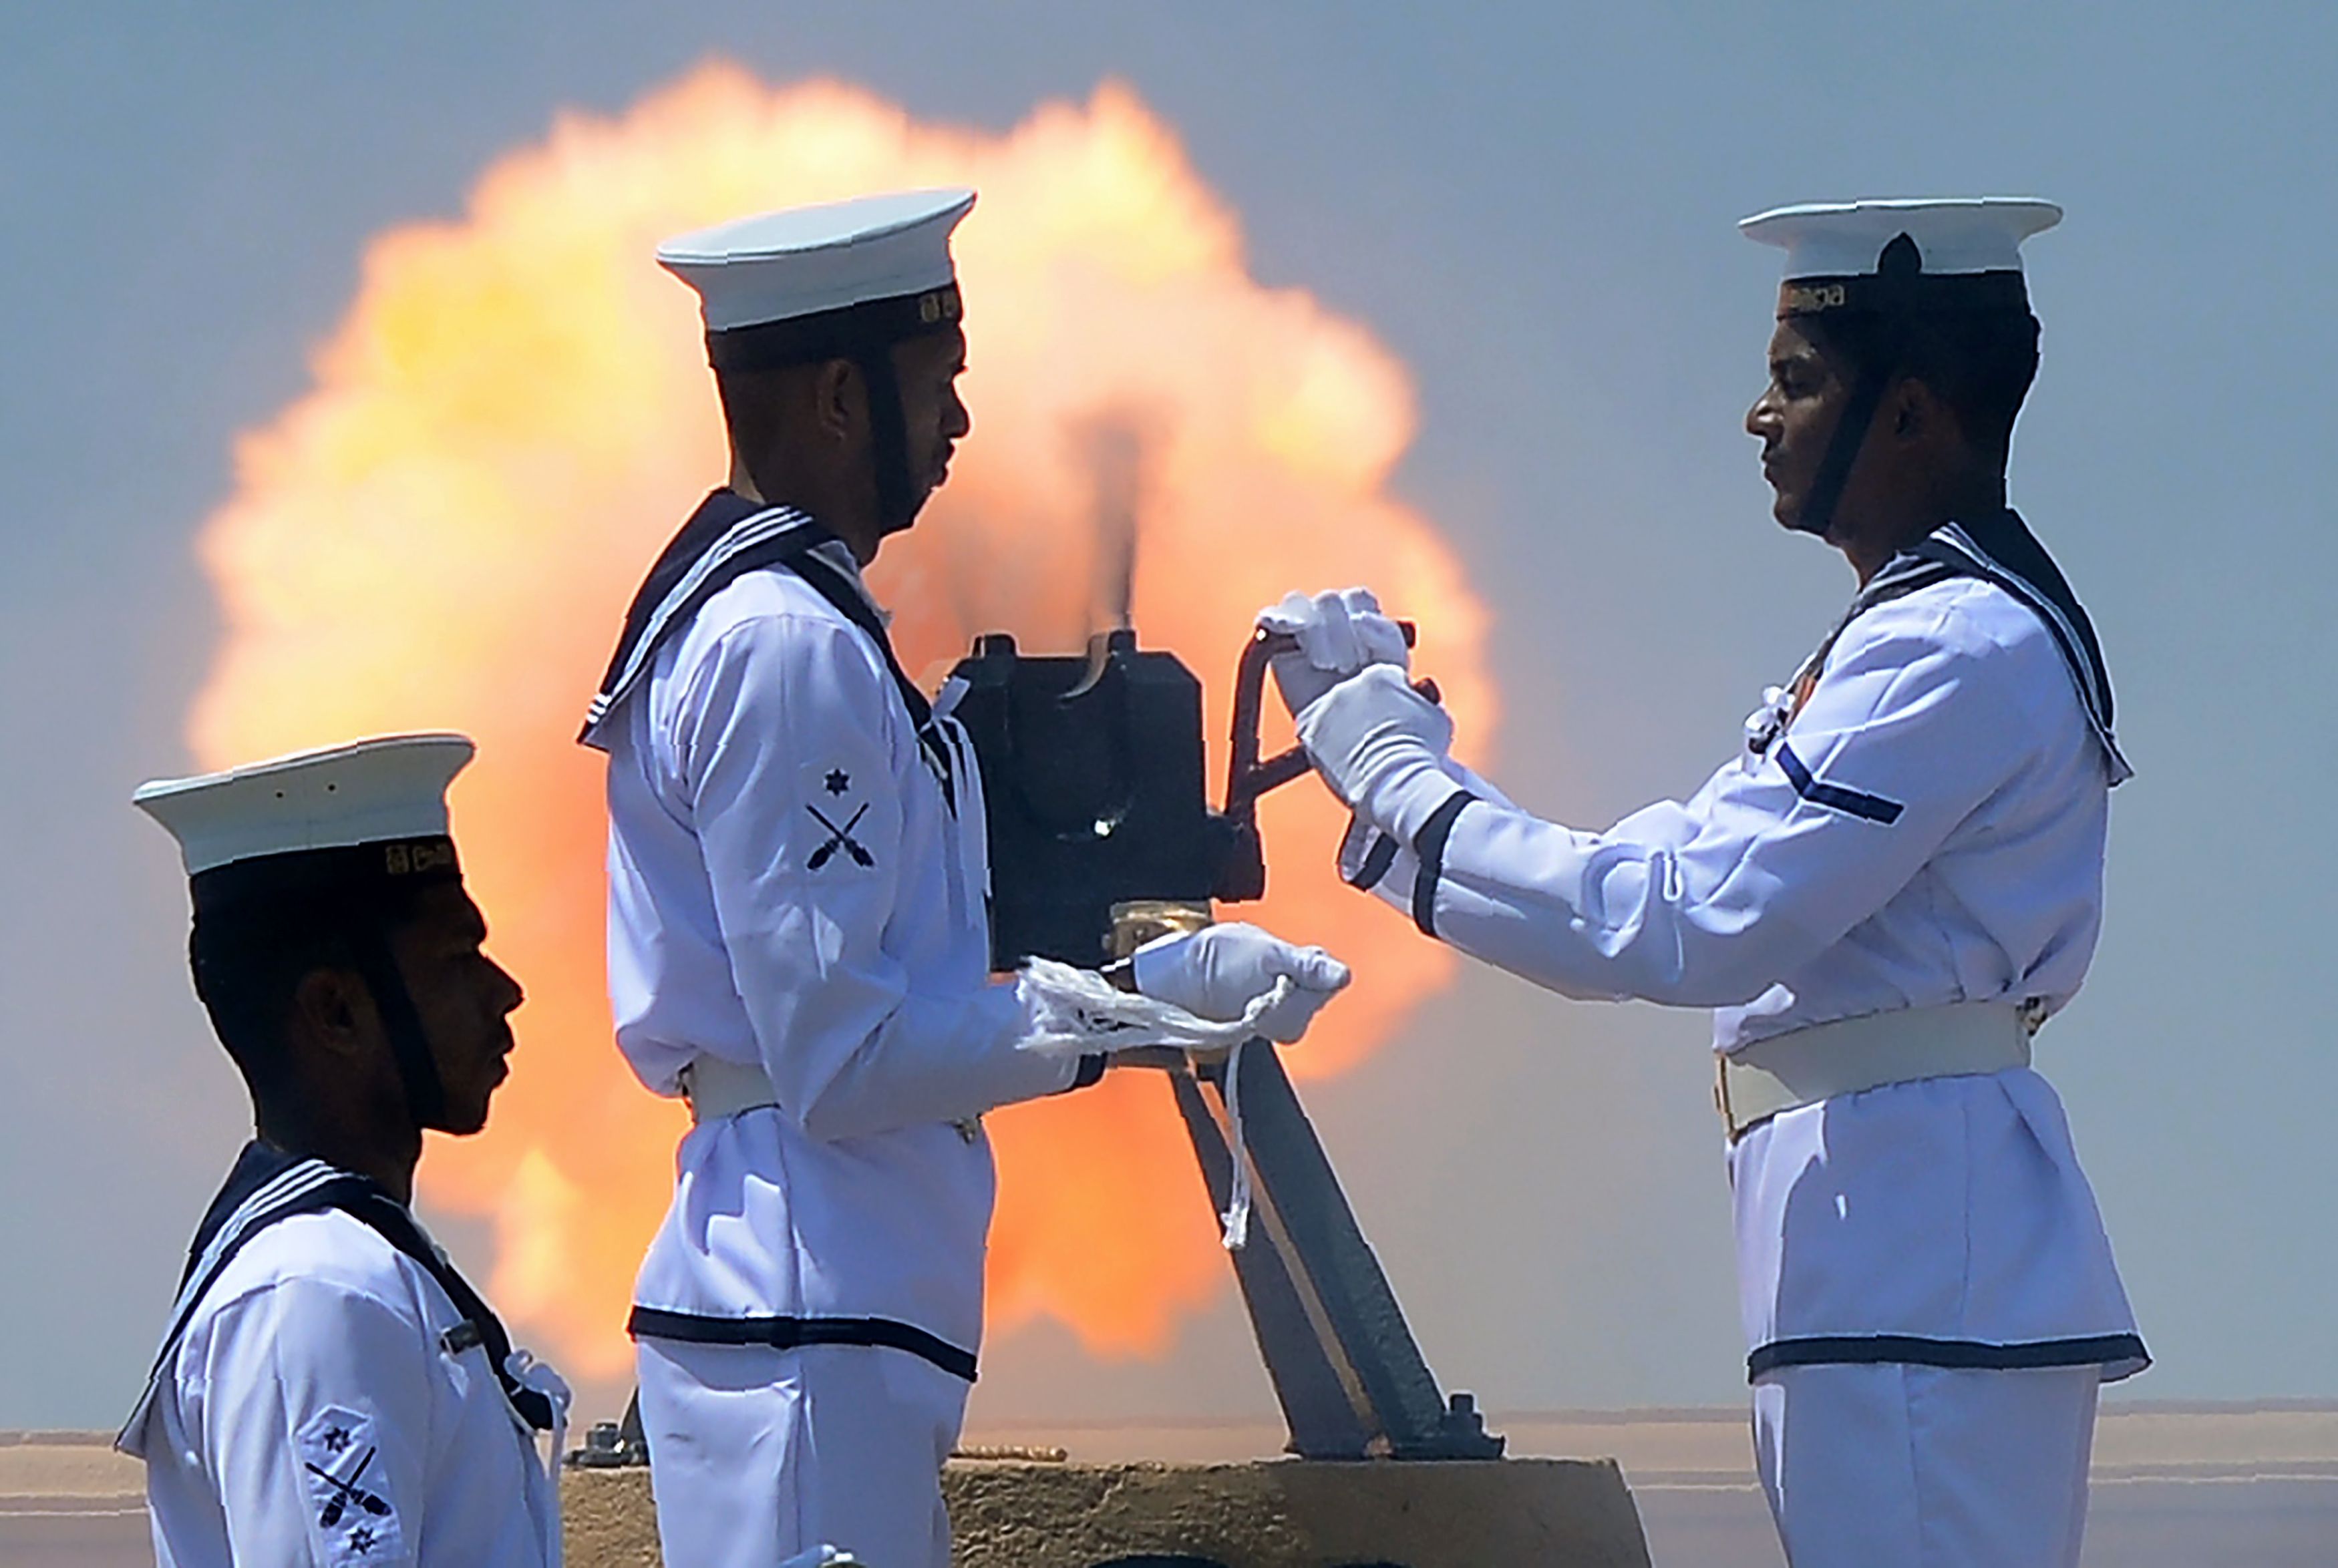 أفراد البحرية السريلانكية يطلقون نيران المدافع احتفالًا بعيد الاستقلال